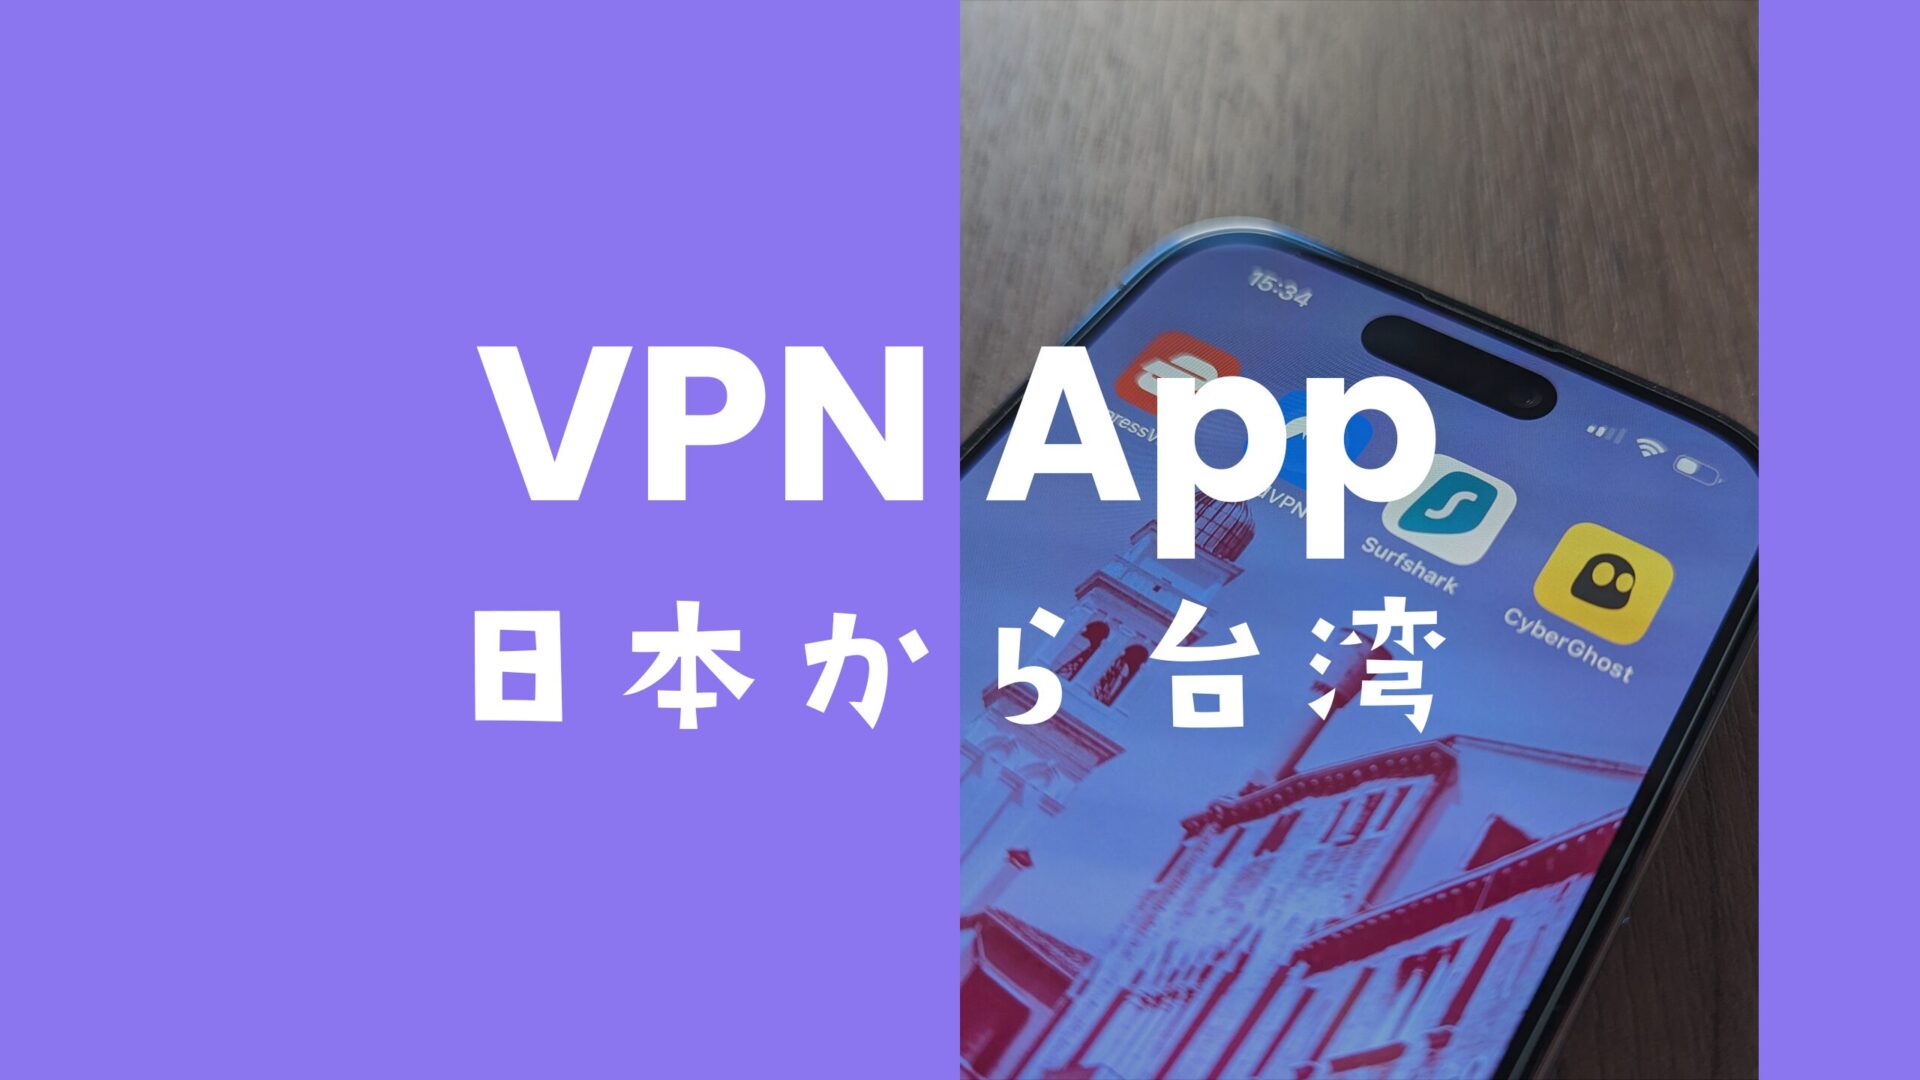 VPNで日本から台湾に接続できるサービスのおすすめを解説。のサムネイル画像